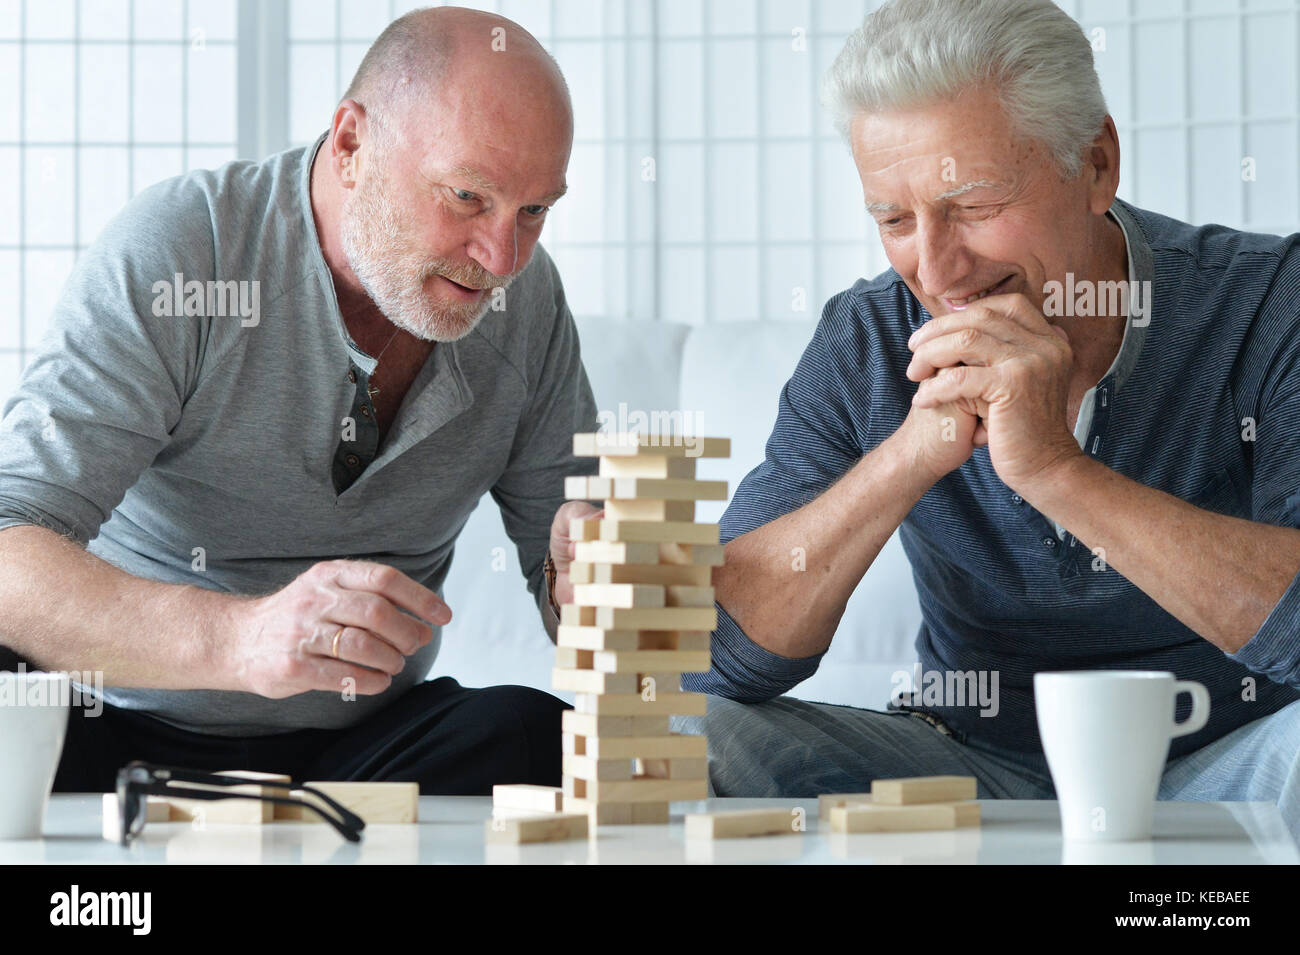 senior men playing  board game Stock Photo